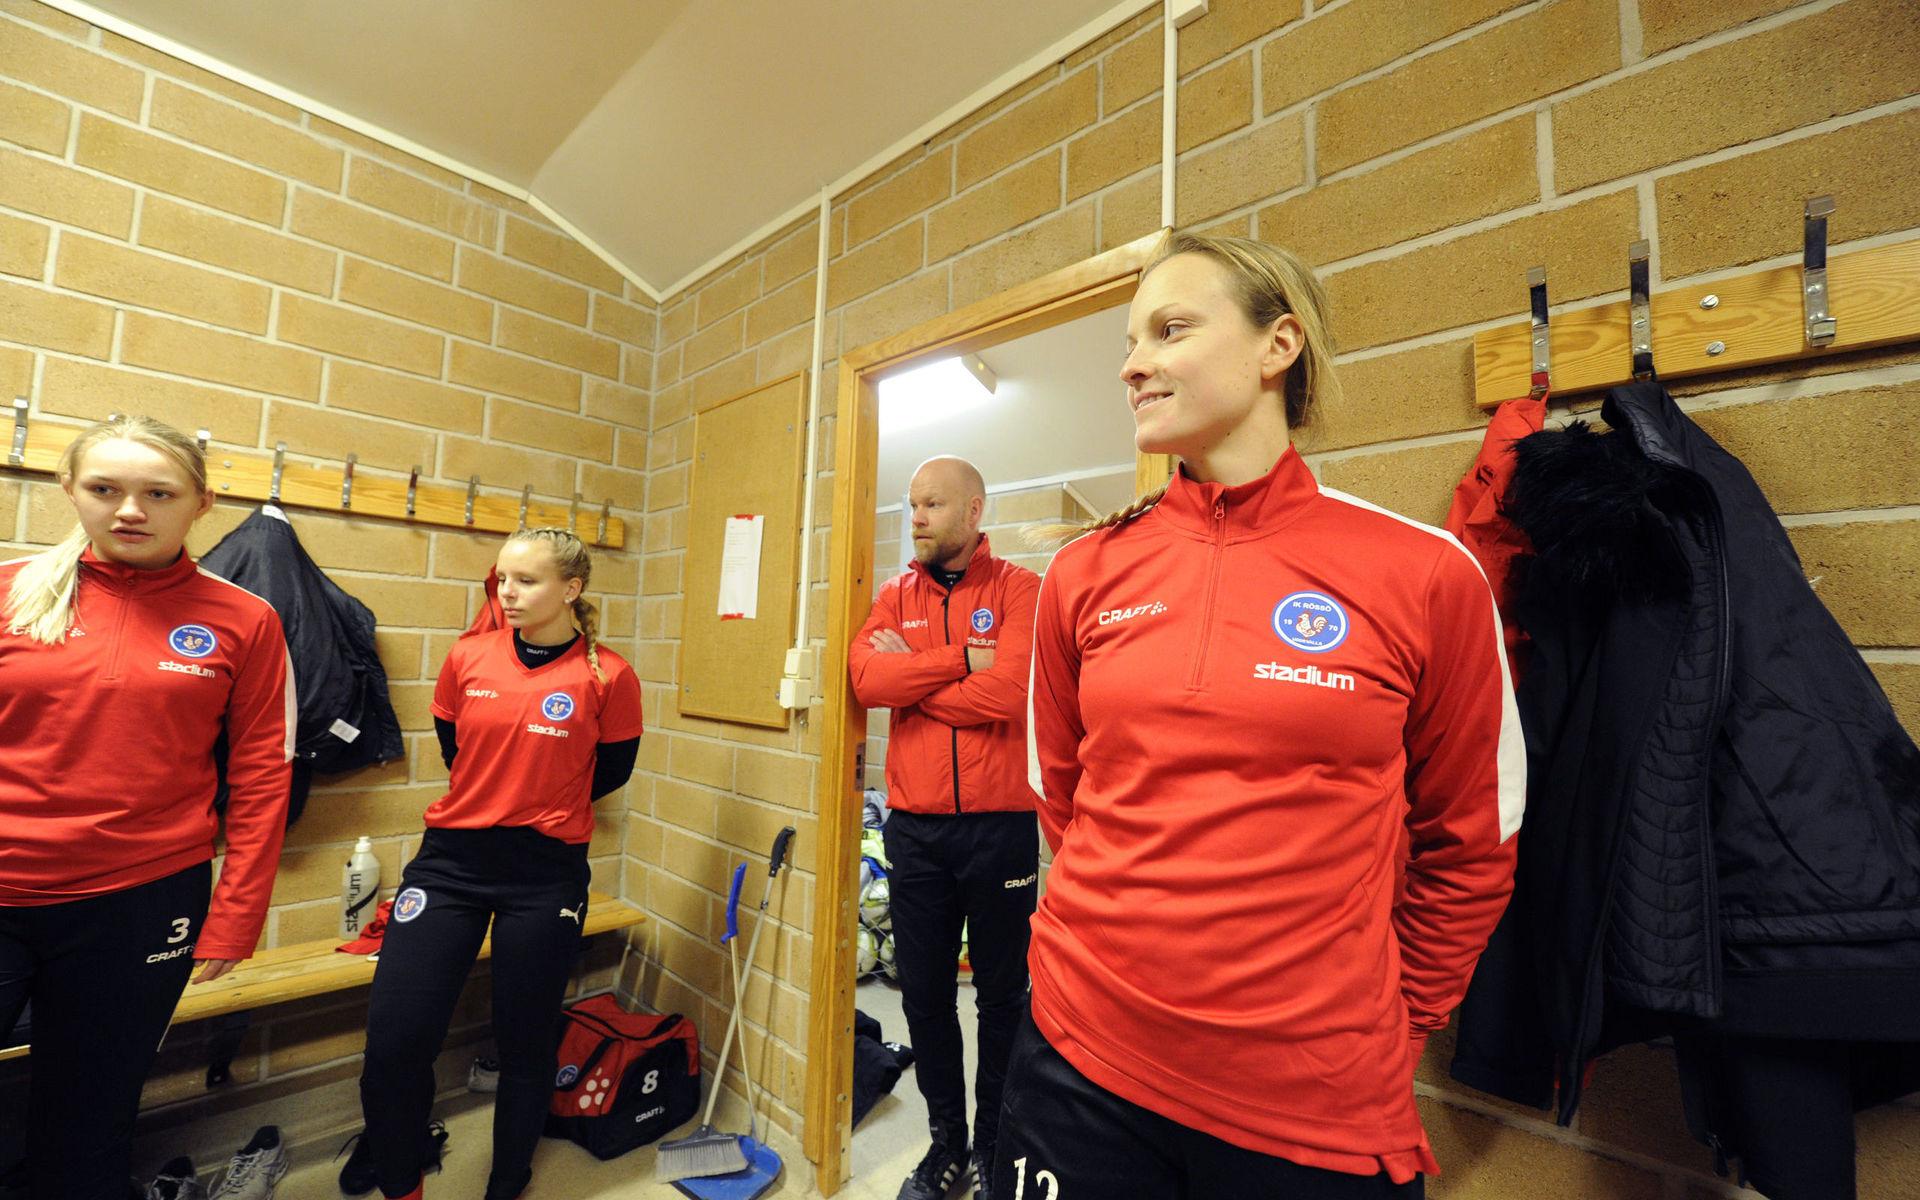 På kort tid har Anna Blom gått från rutinerad spelare i Rössö till nyprövad tränare i samma klubb. En övergång som har skett successivt sedan hon blev korsbandsskadad på valdagen i september 2018. 